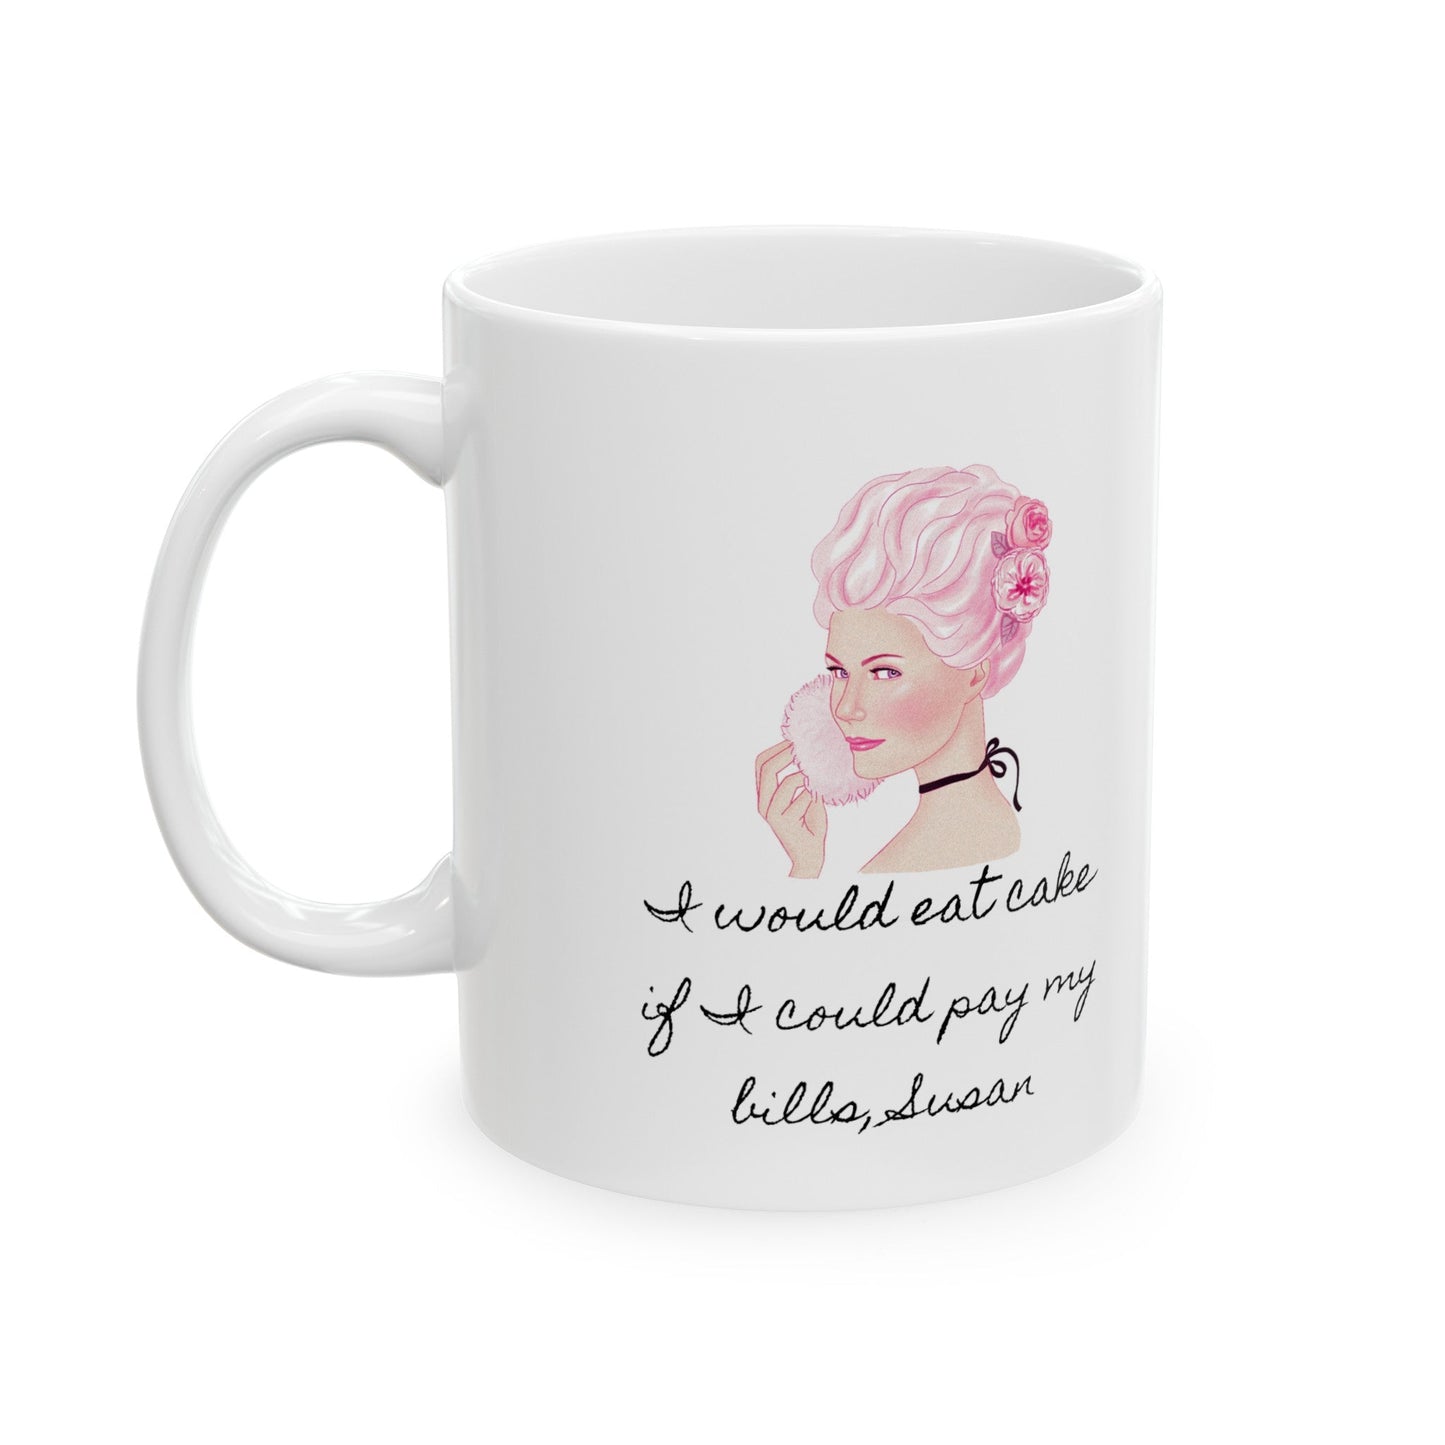 Marie Antoinette Ceramic Mug, (11oz, 15oz) - Existential Quotes